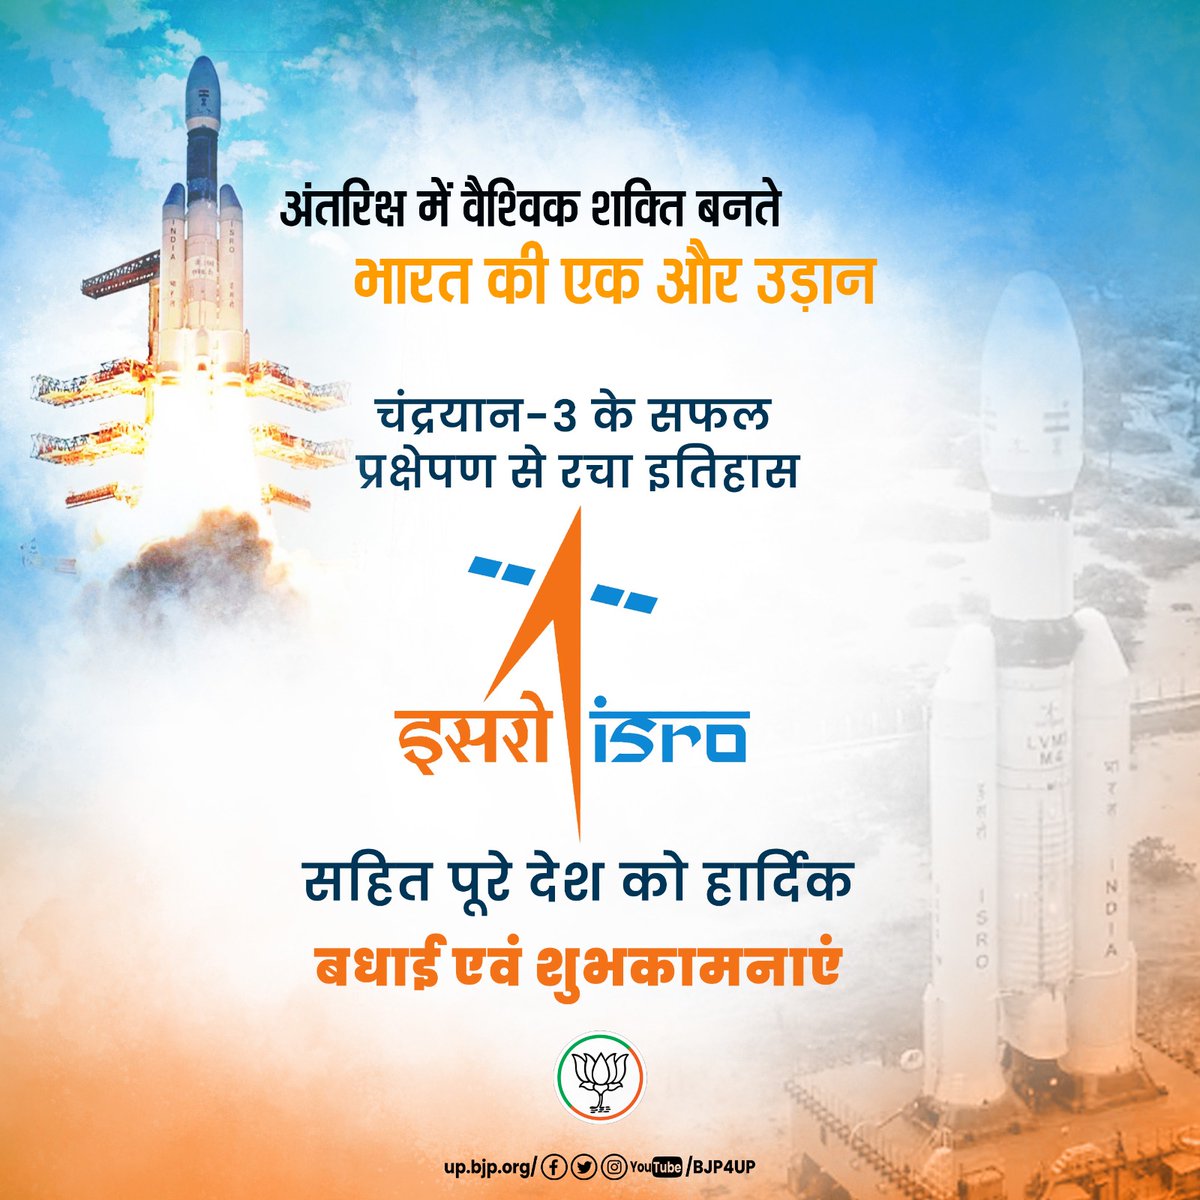 अंतरिक्ष में वैश्विक शक्ति बनते भारत की एक और उड़ान! चंद्रयान-3 के सफल प्रक्षेपण से रचा इतिहास, ISRO सहित पूरे देश को हार्दिक बधाई एवं शुभकामनाएं... #ISRO #Chandrayaan3